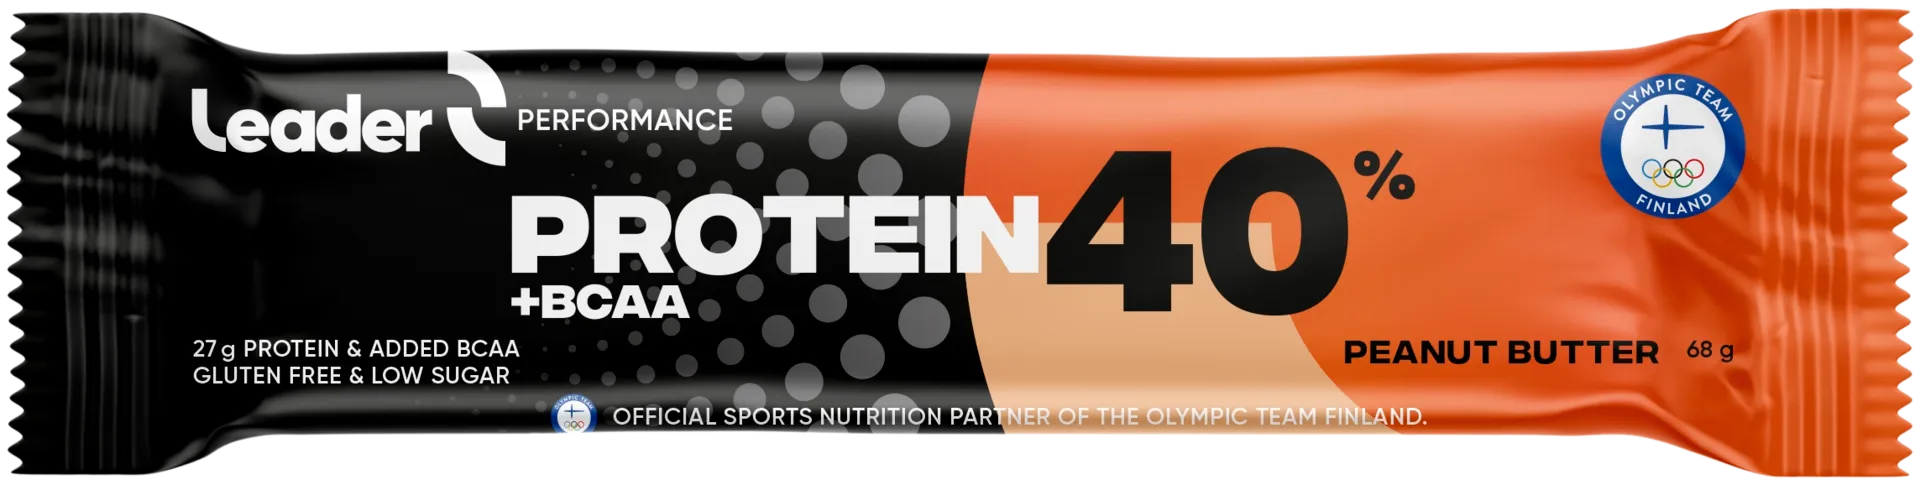 Leader Performance protein 40% + BCAA proteiinipatukka maapähkinävoin makuinen 68 g